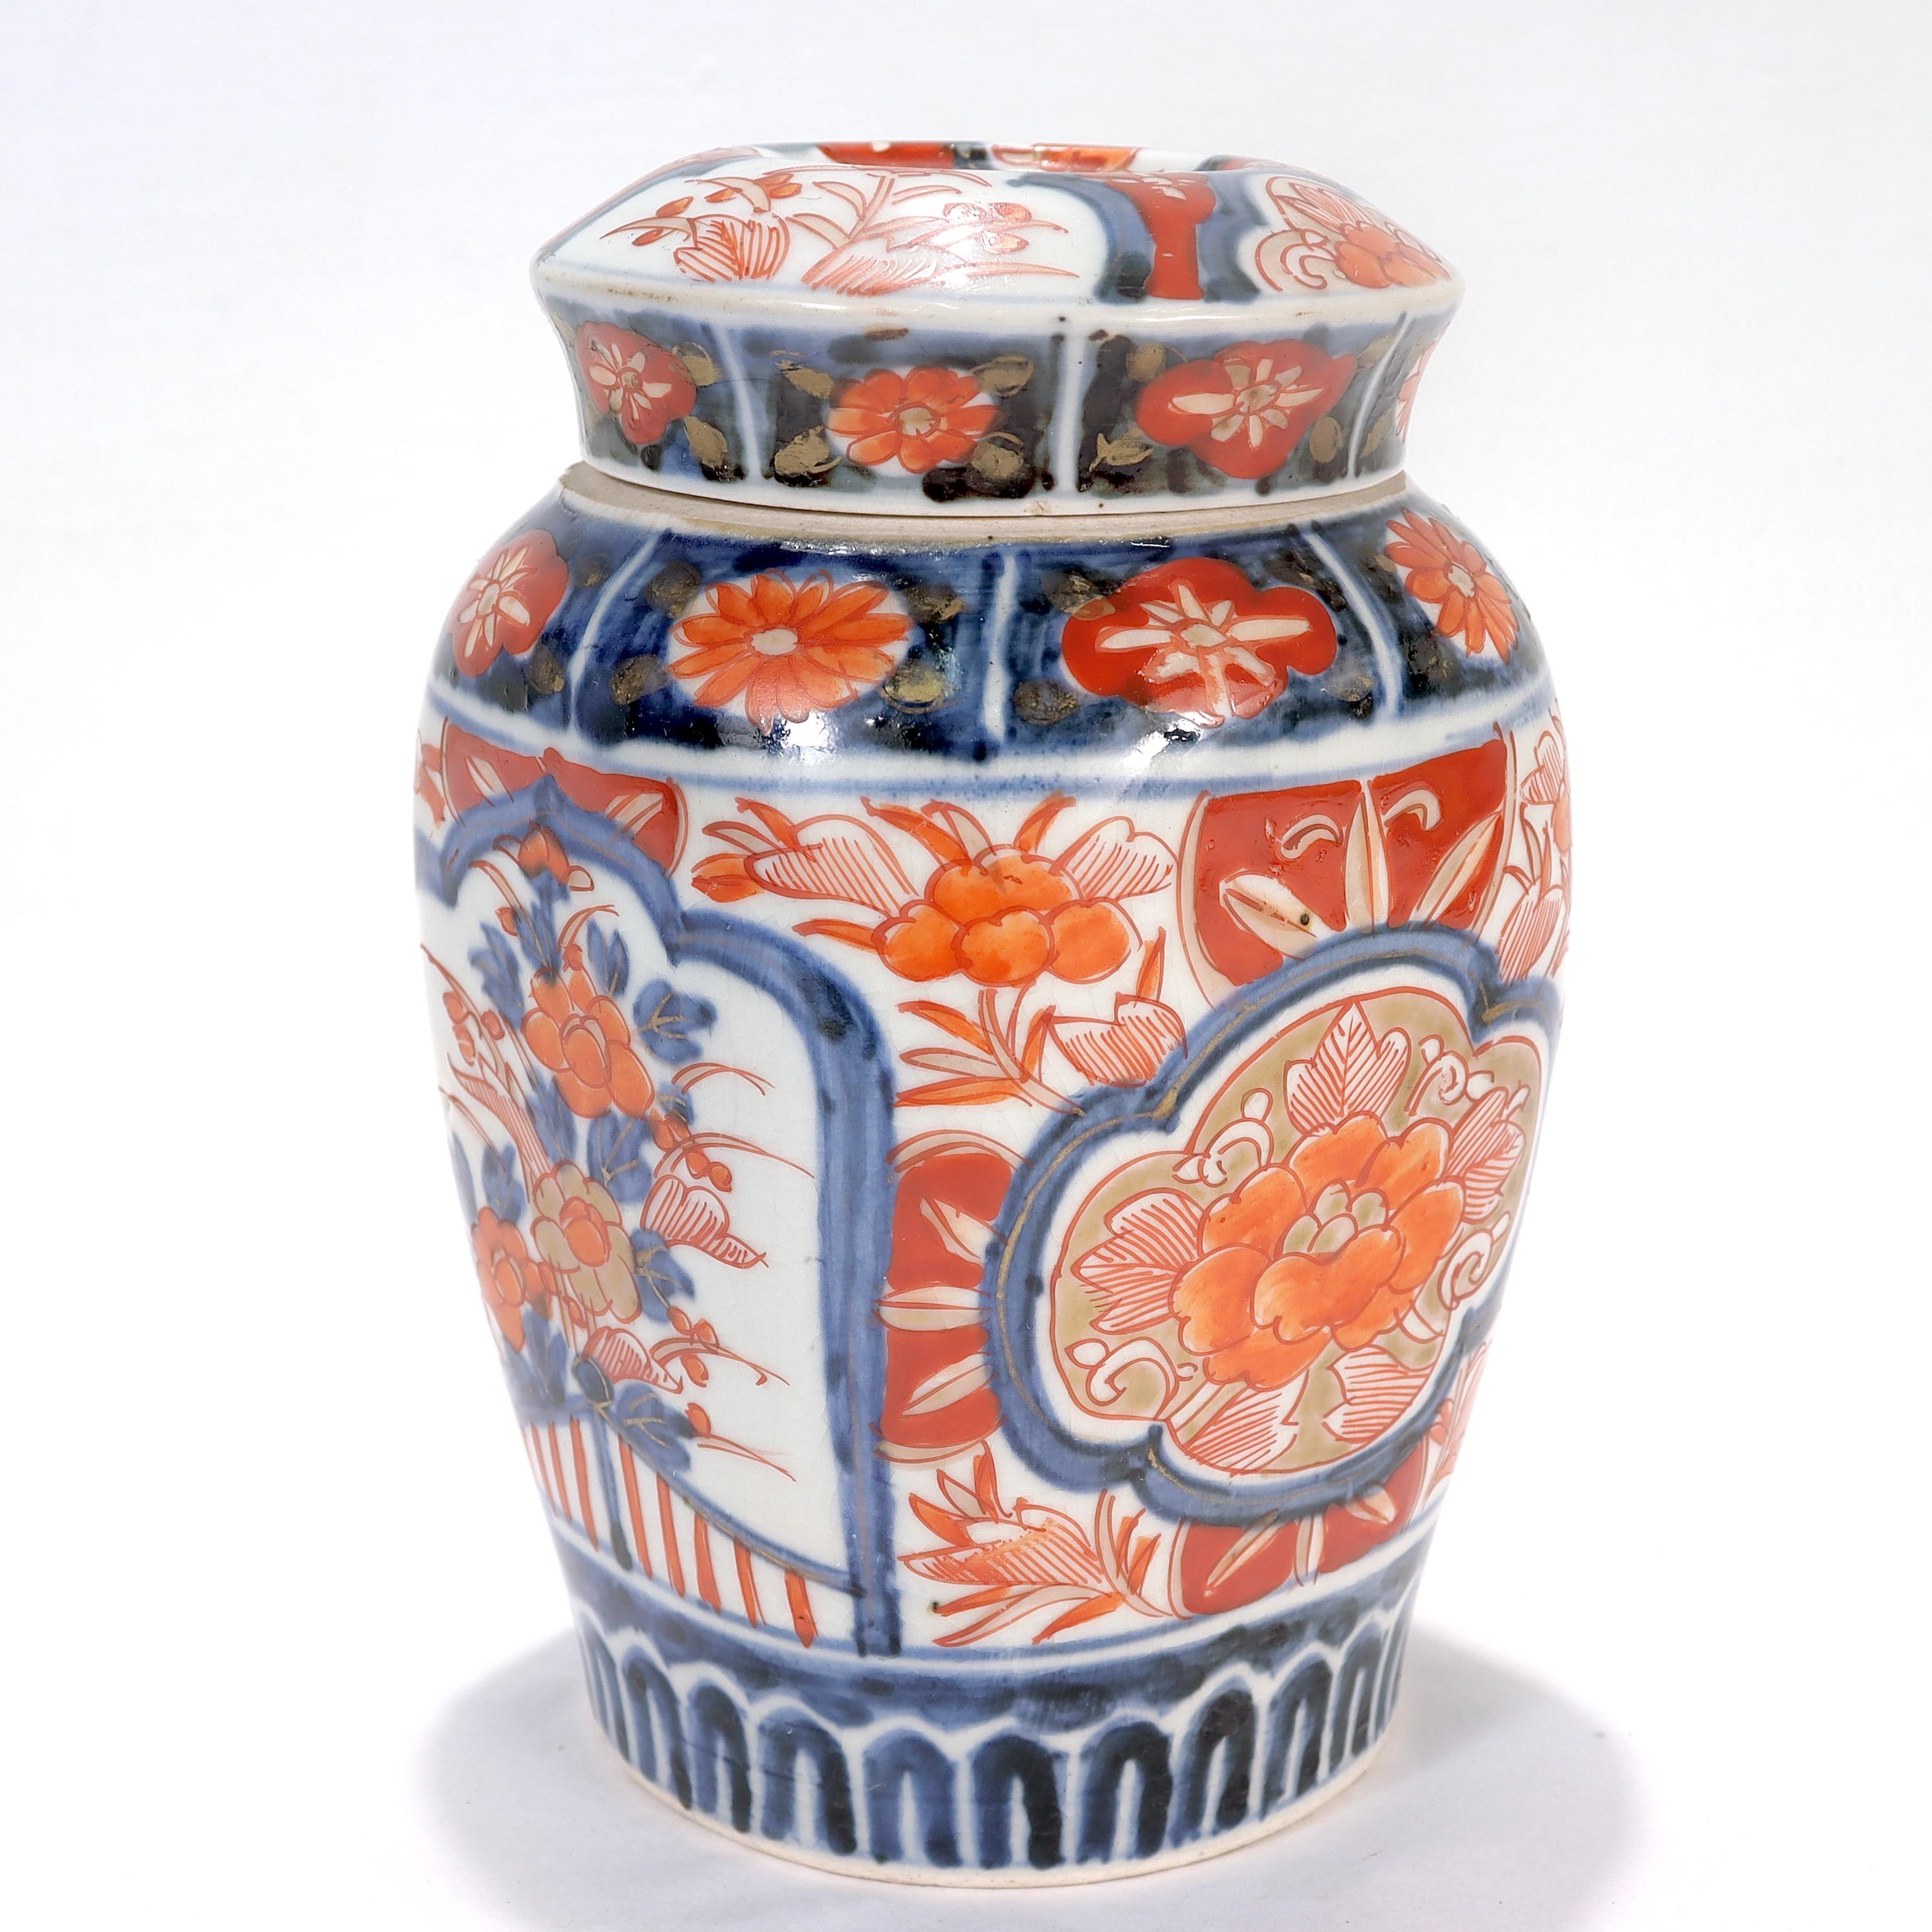 Old or Antique Japanese Imari Porcelain Covered Jar or Urn For Sale 1